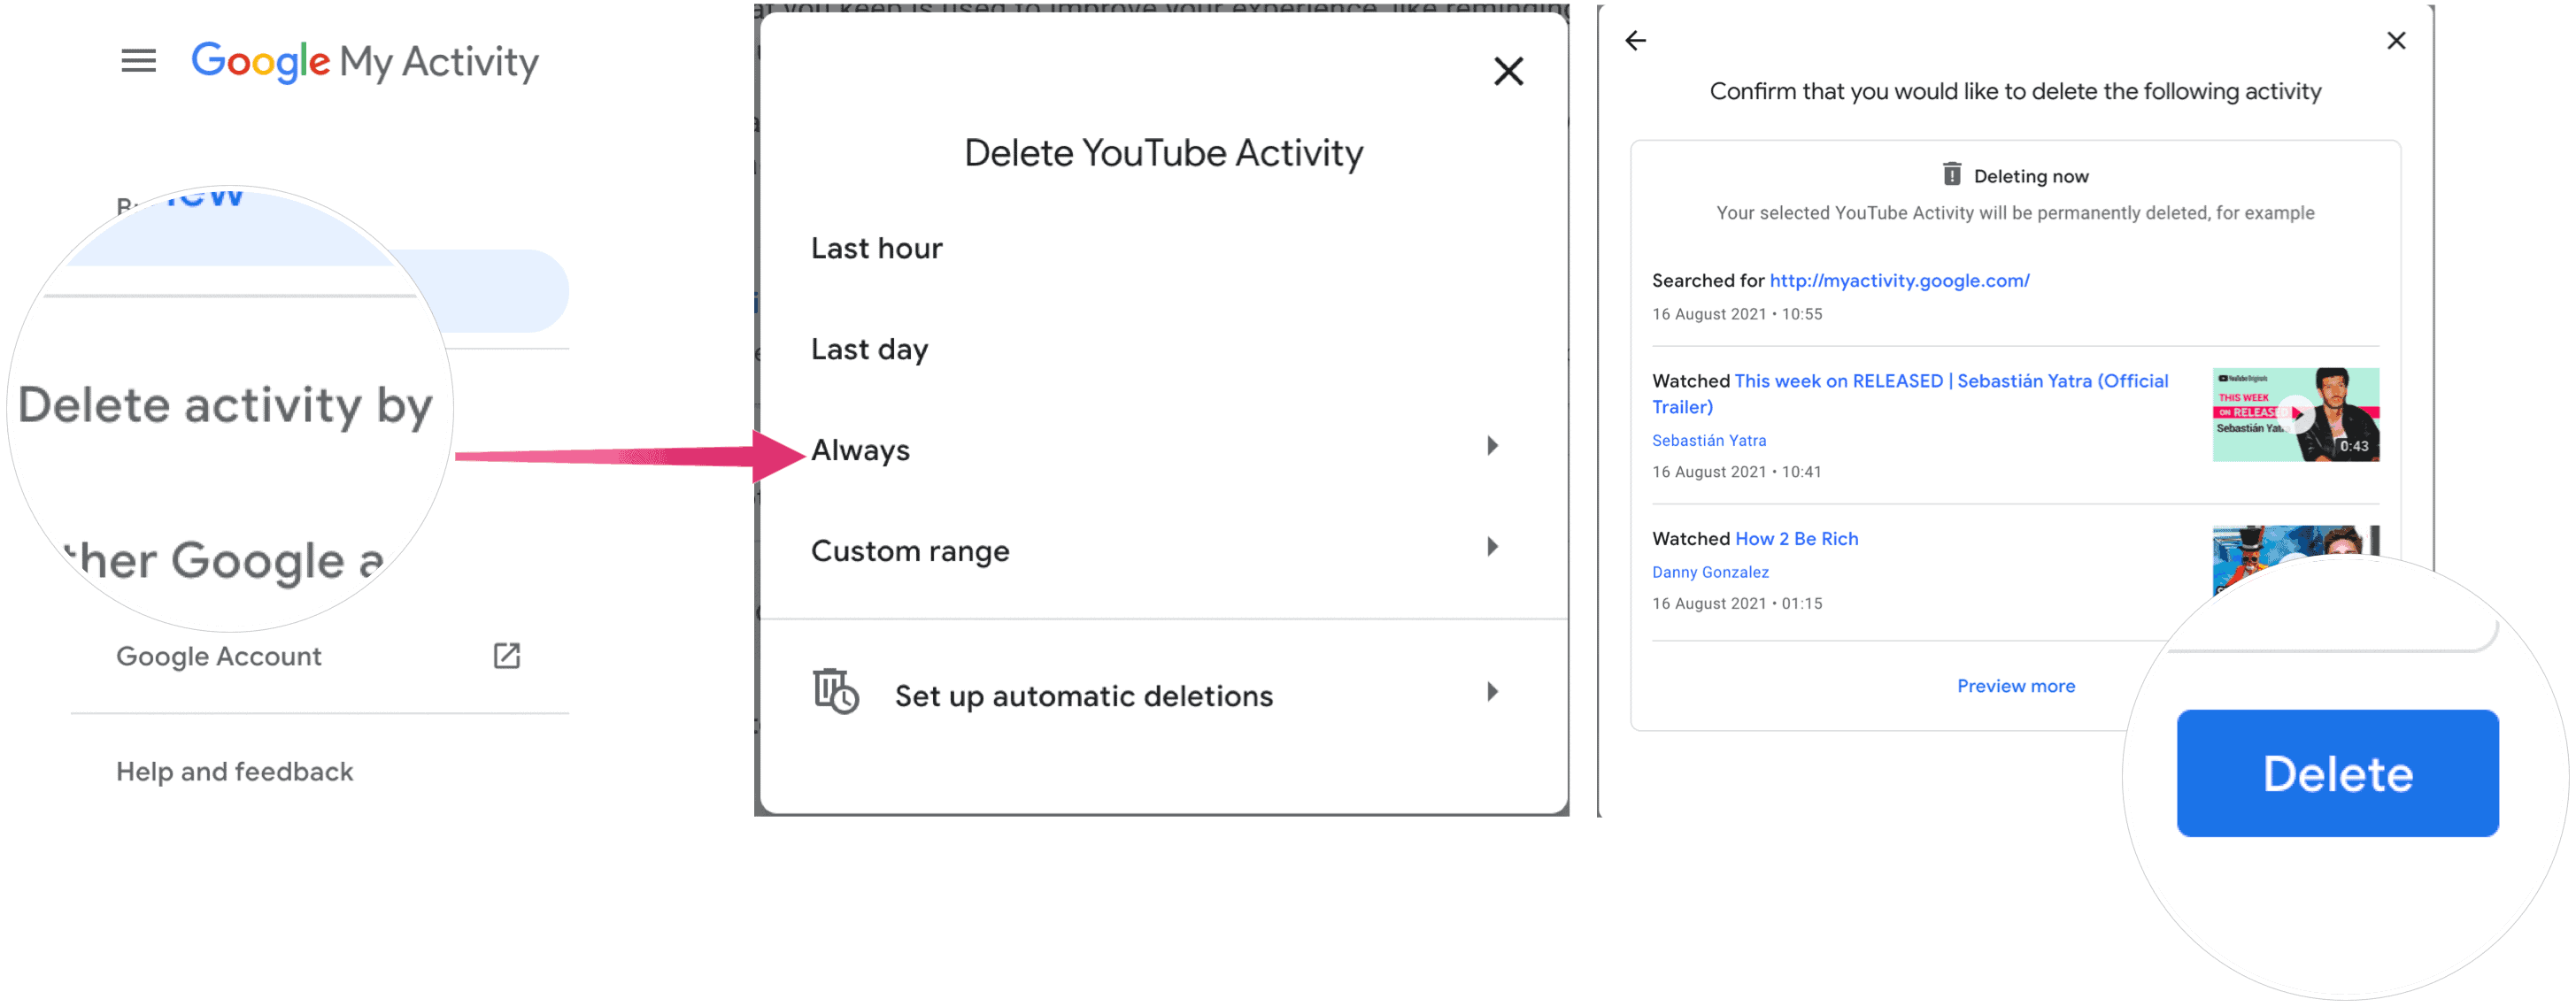 Delete YouTube activity